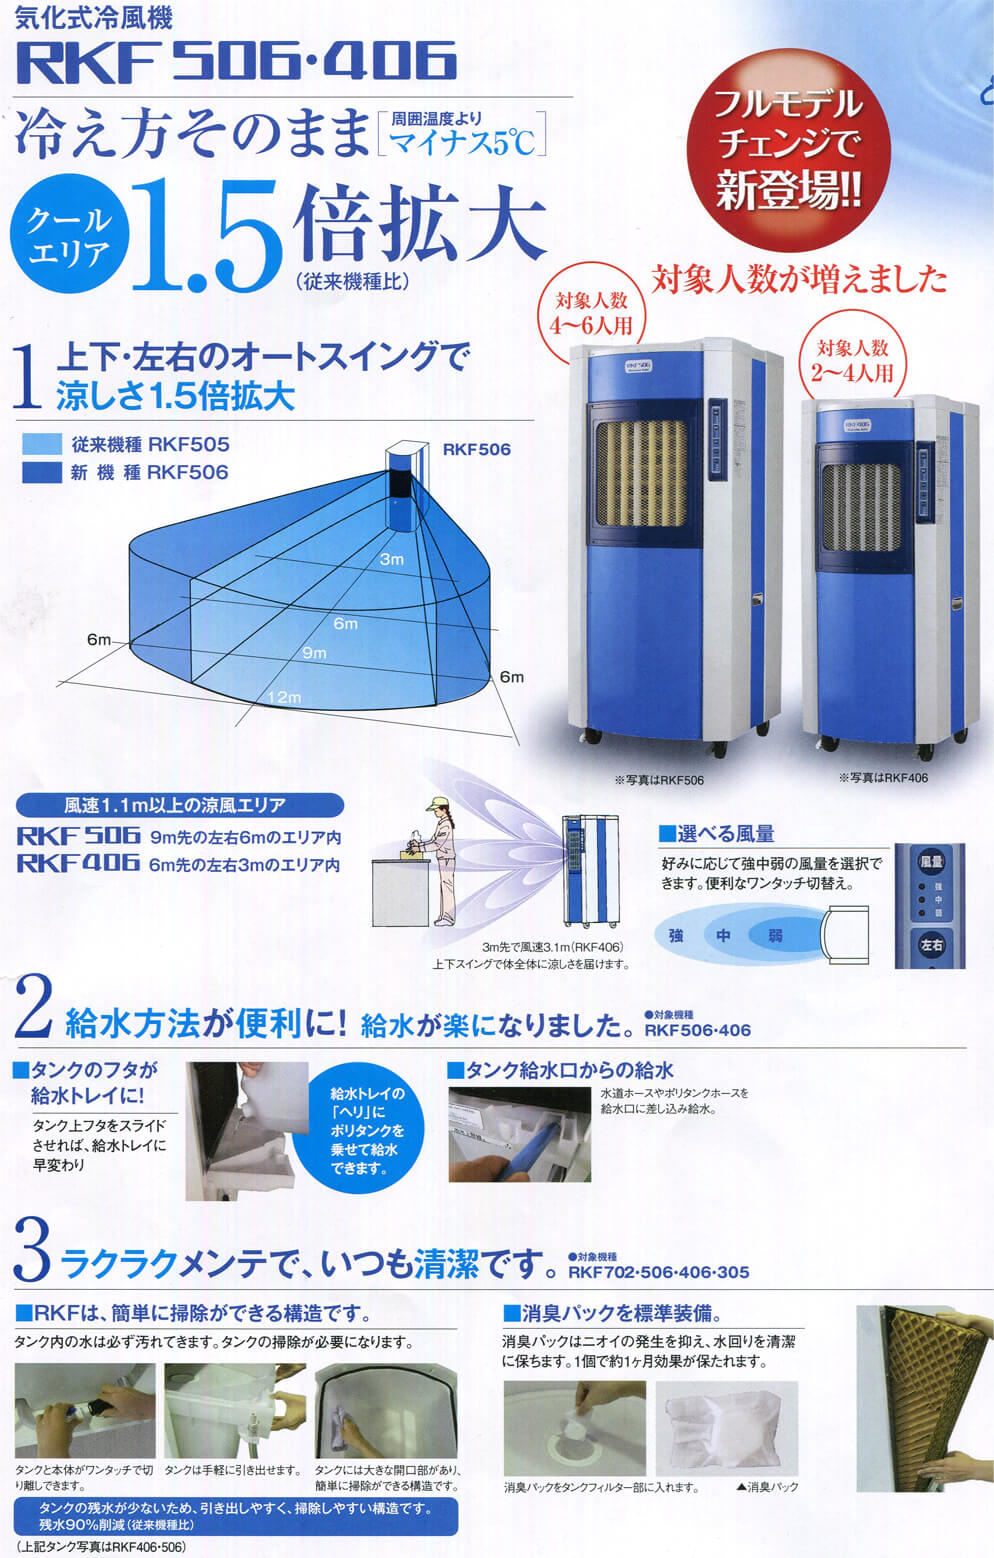 静岡製機 RKF506 気化式冷風機【数量限定特価】 ウエダ金物【公式サイト】